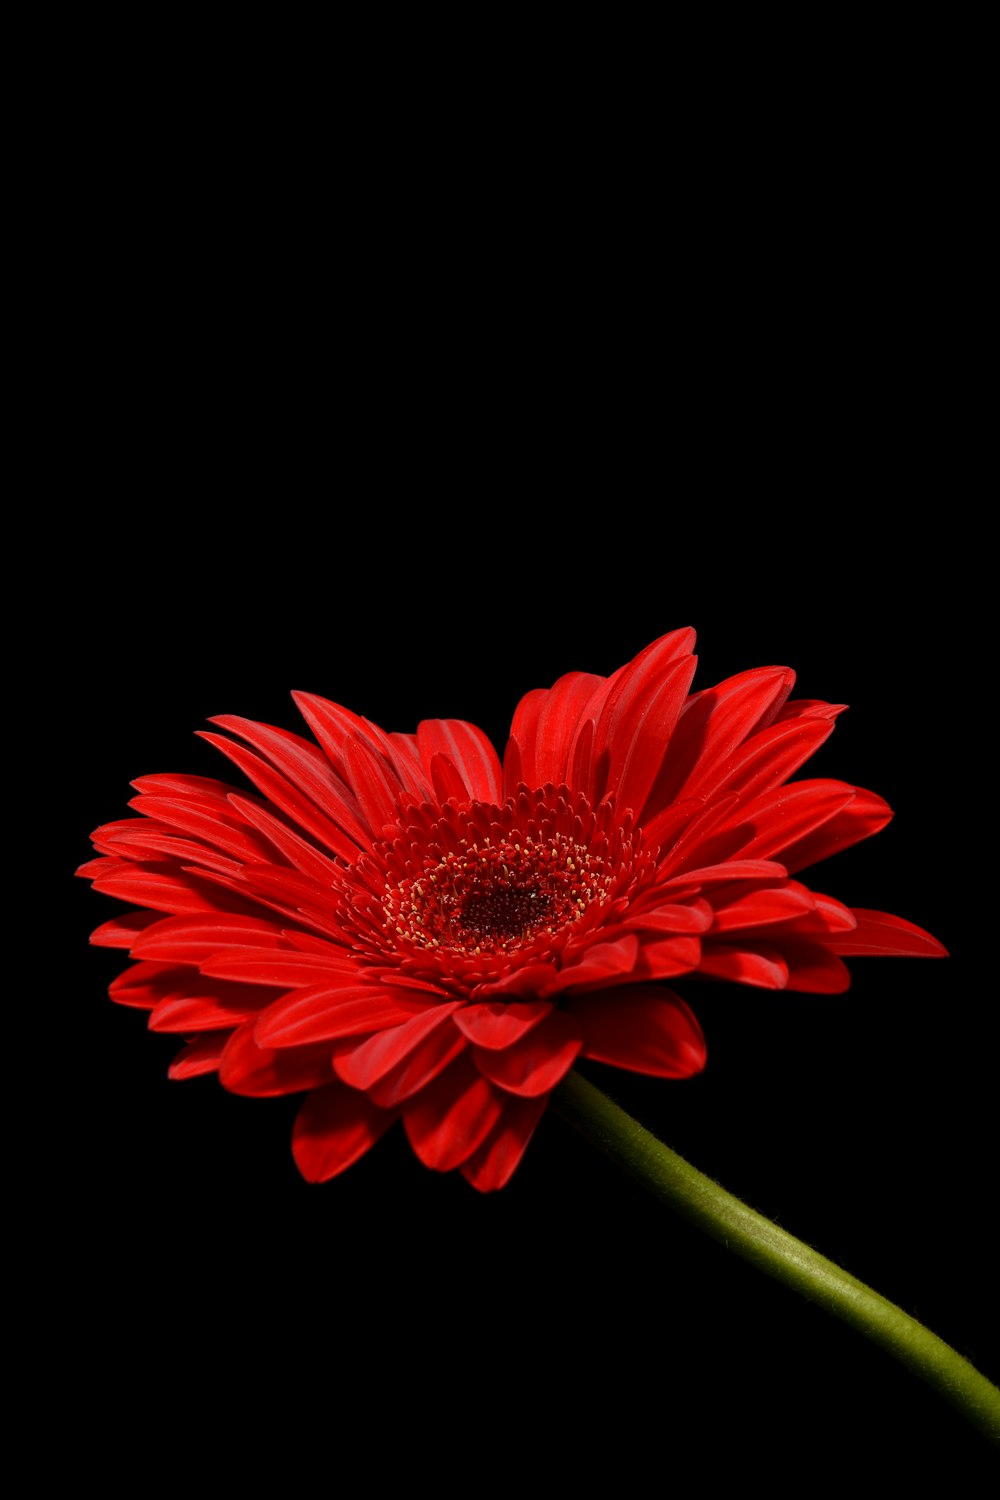 fotografia macro da flor de pétala vermelha